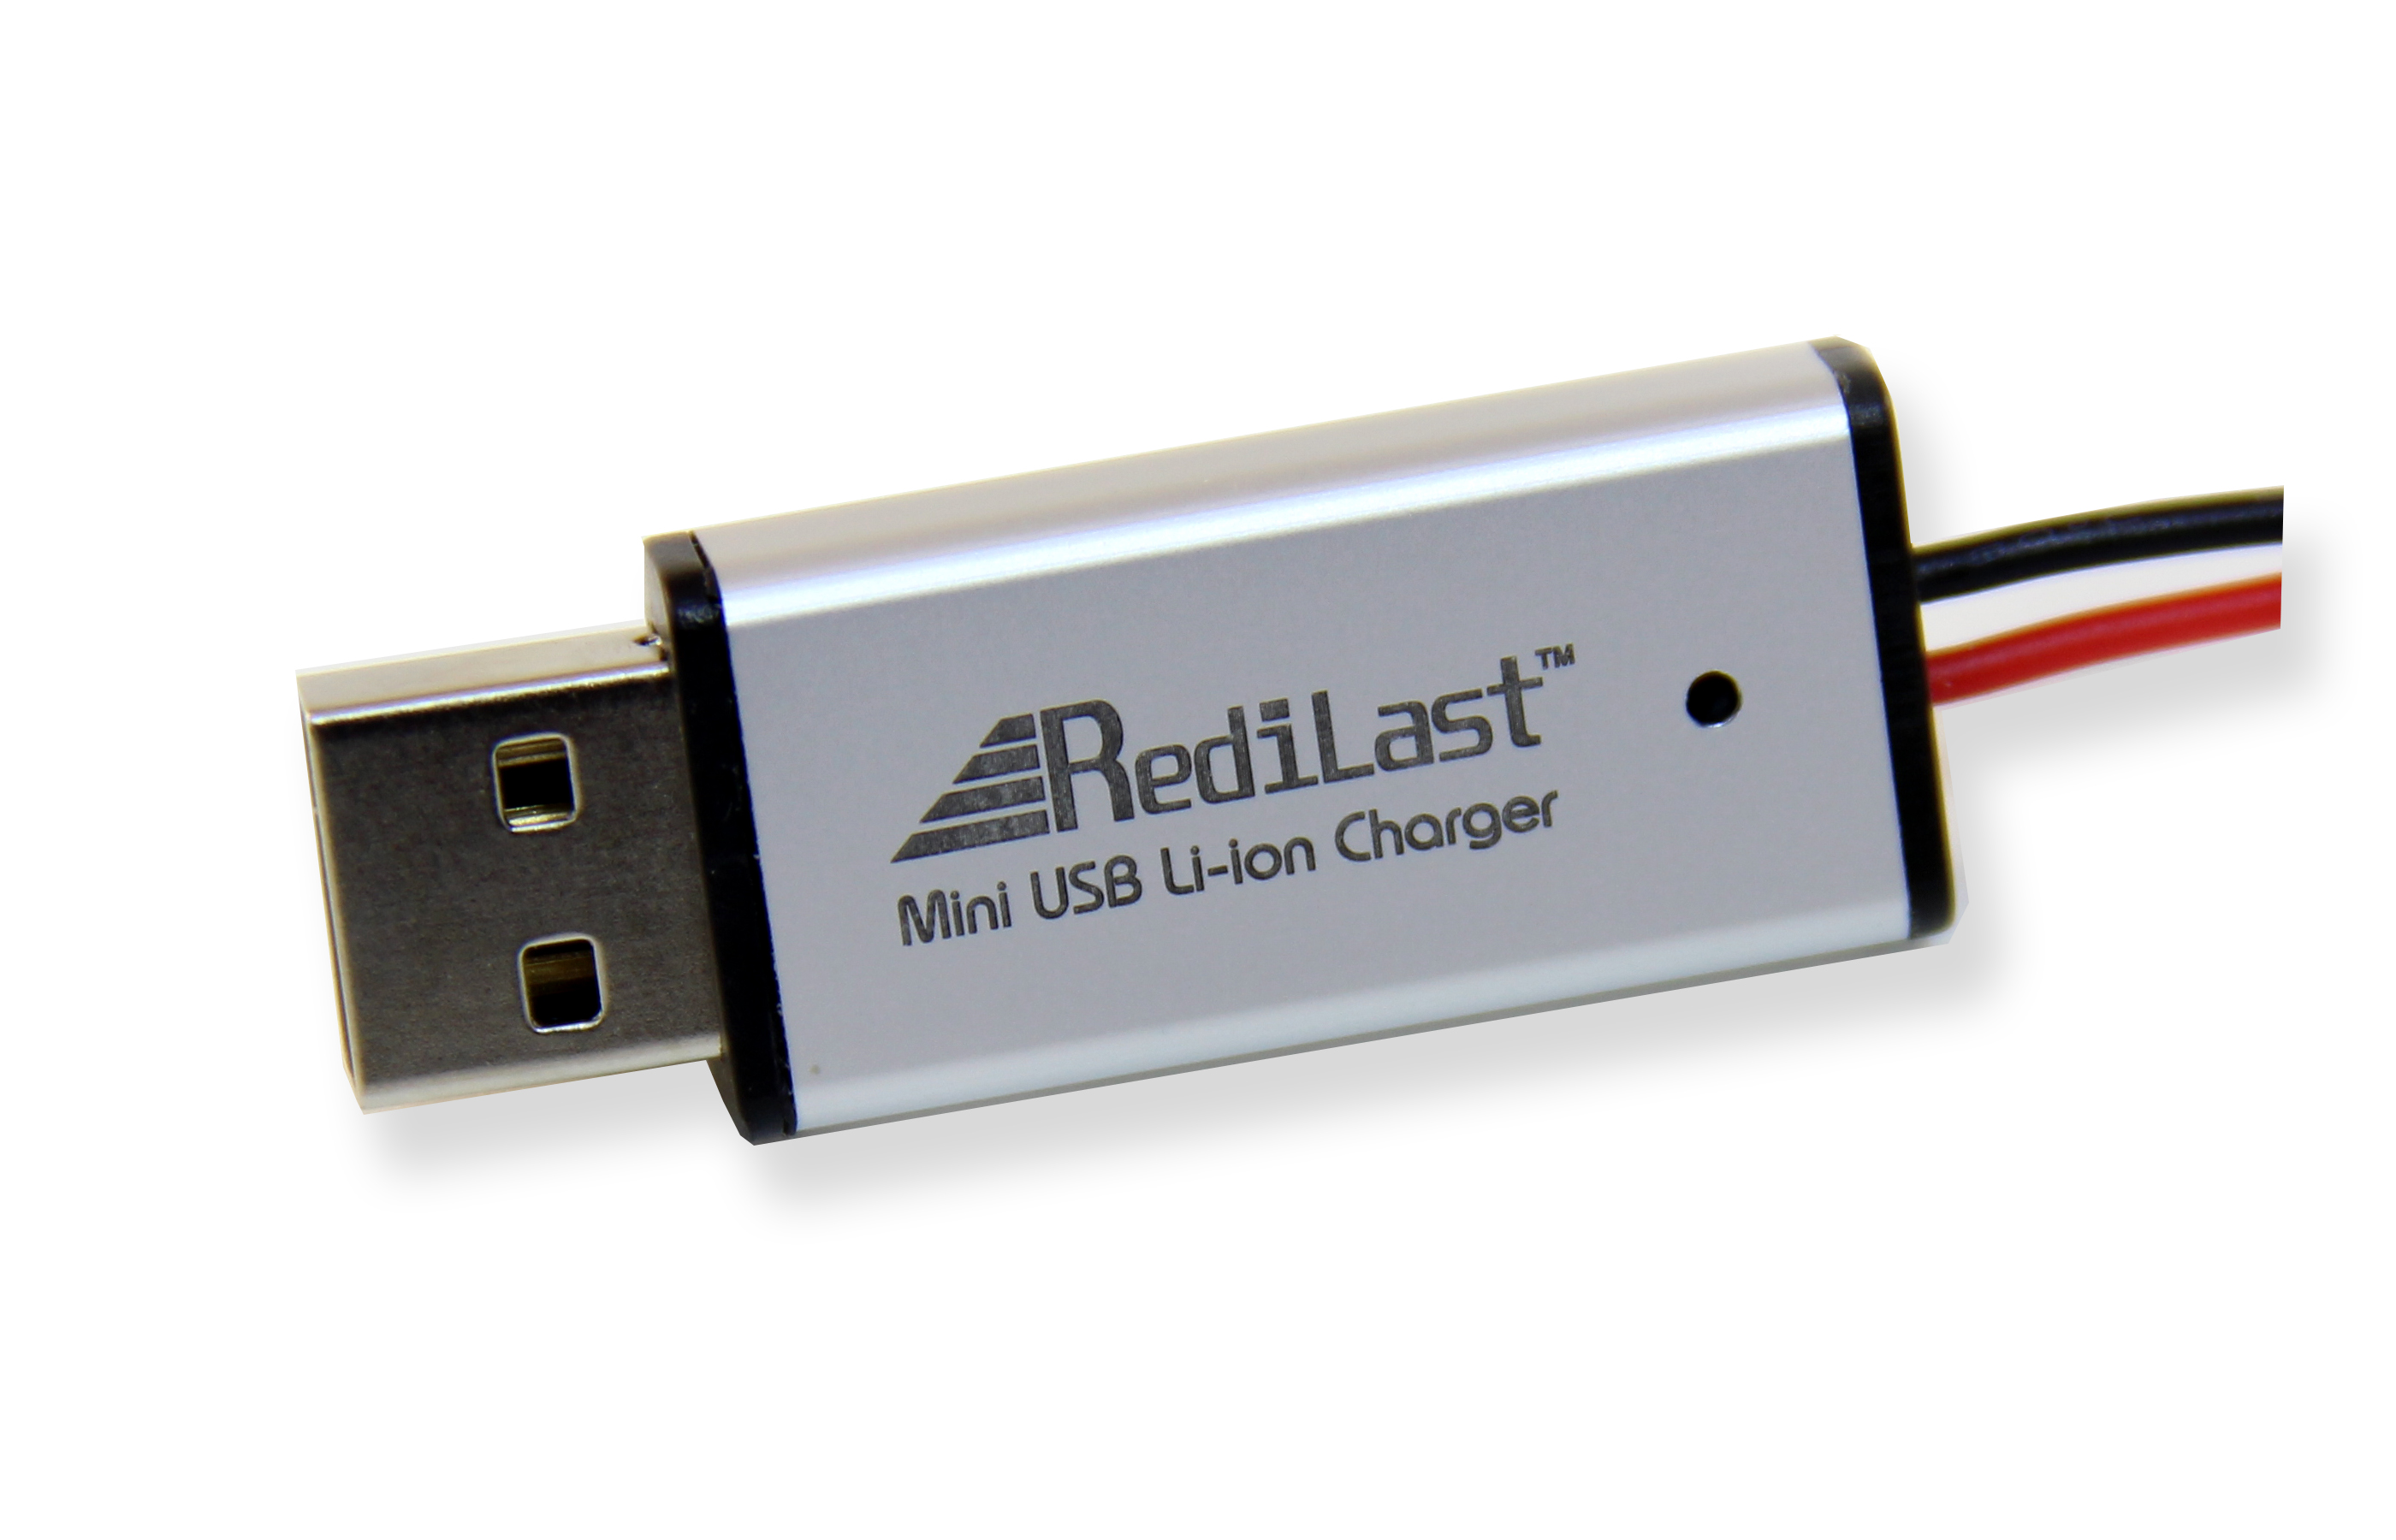 Redilast Mini USB Li-ion Charger (500mA)